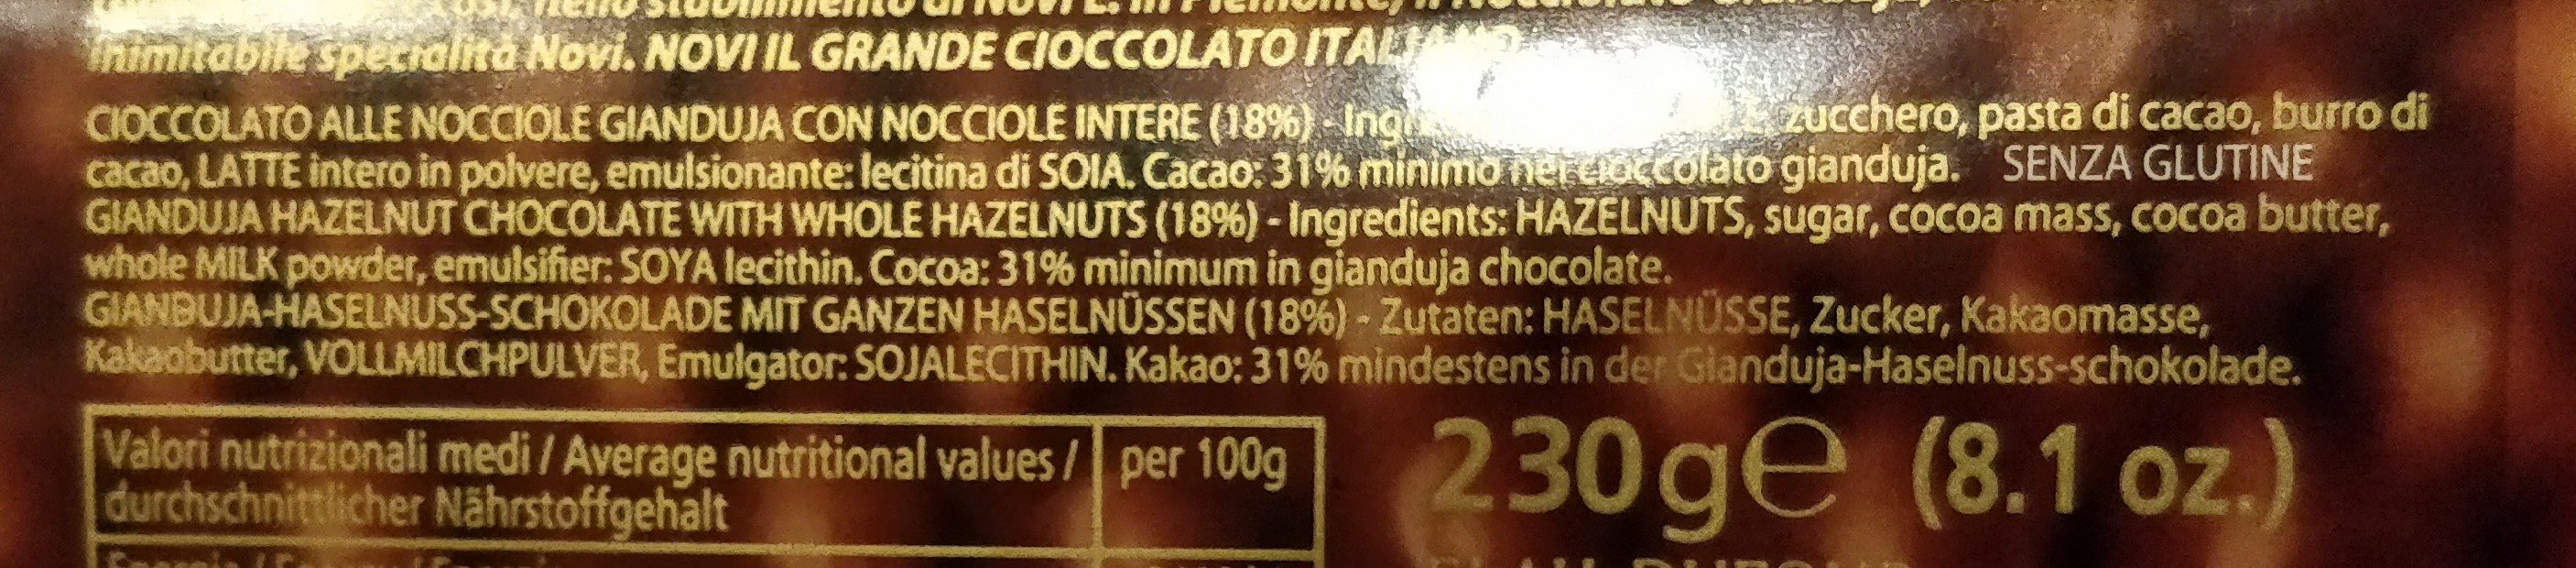 Novi Nocciolato - Cioccolato Gianduja Con Nocciole Intere 230 g - Ingredienti